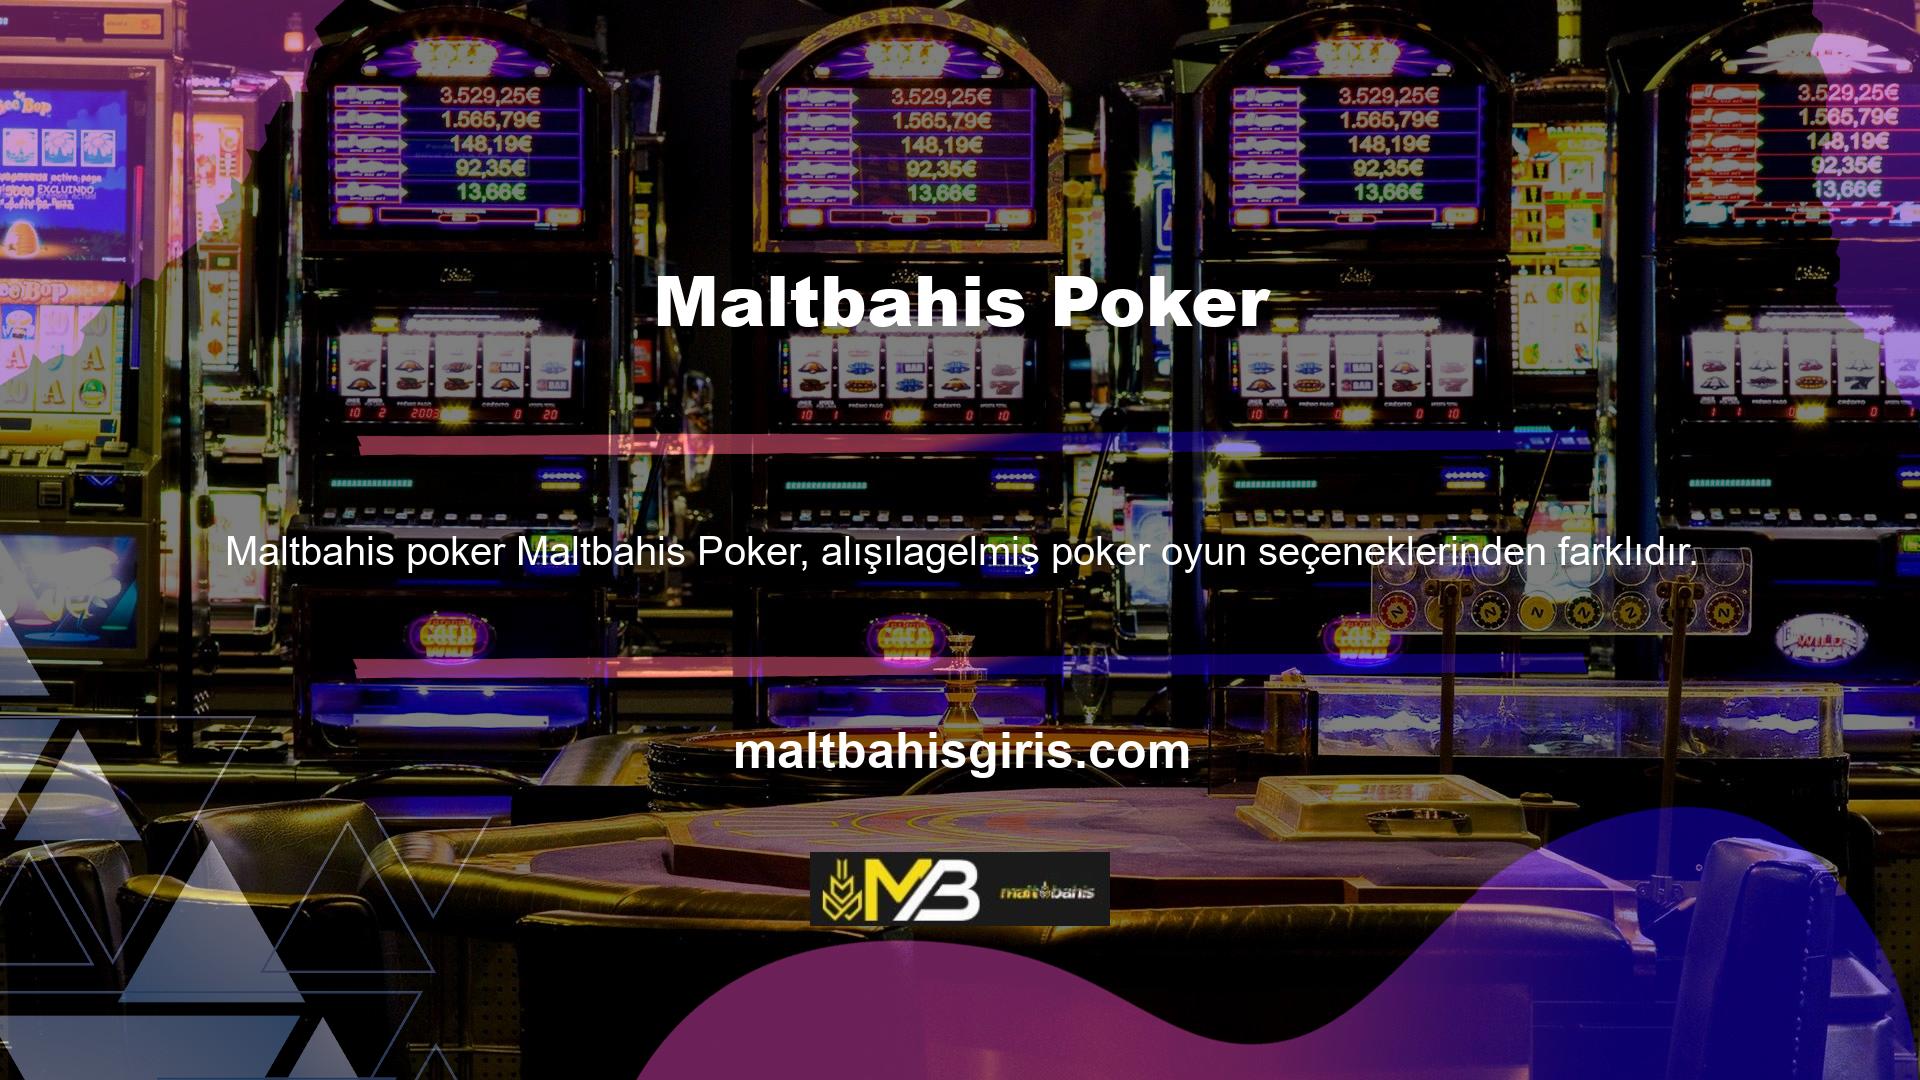 Maltbahis Canlı Casino Poker, Klasik Poker bölümü de dahil olmak üzere bu bölümden herhangi bir uygulamayı indirmenize izin verir